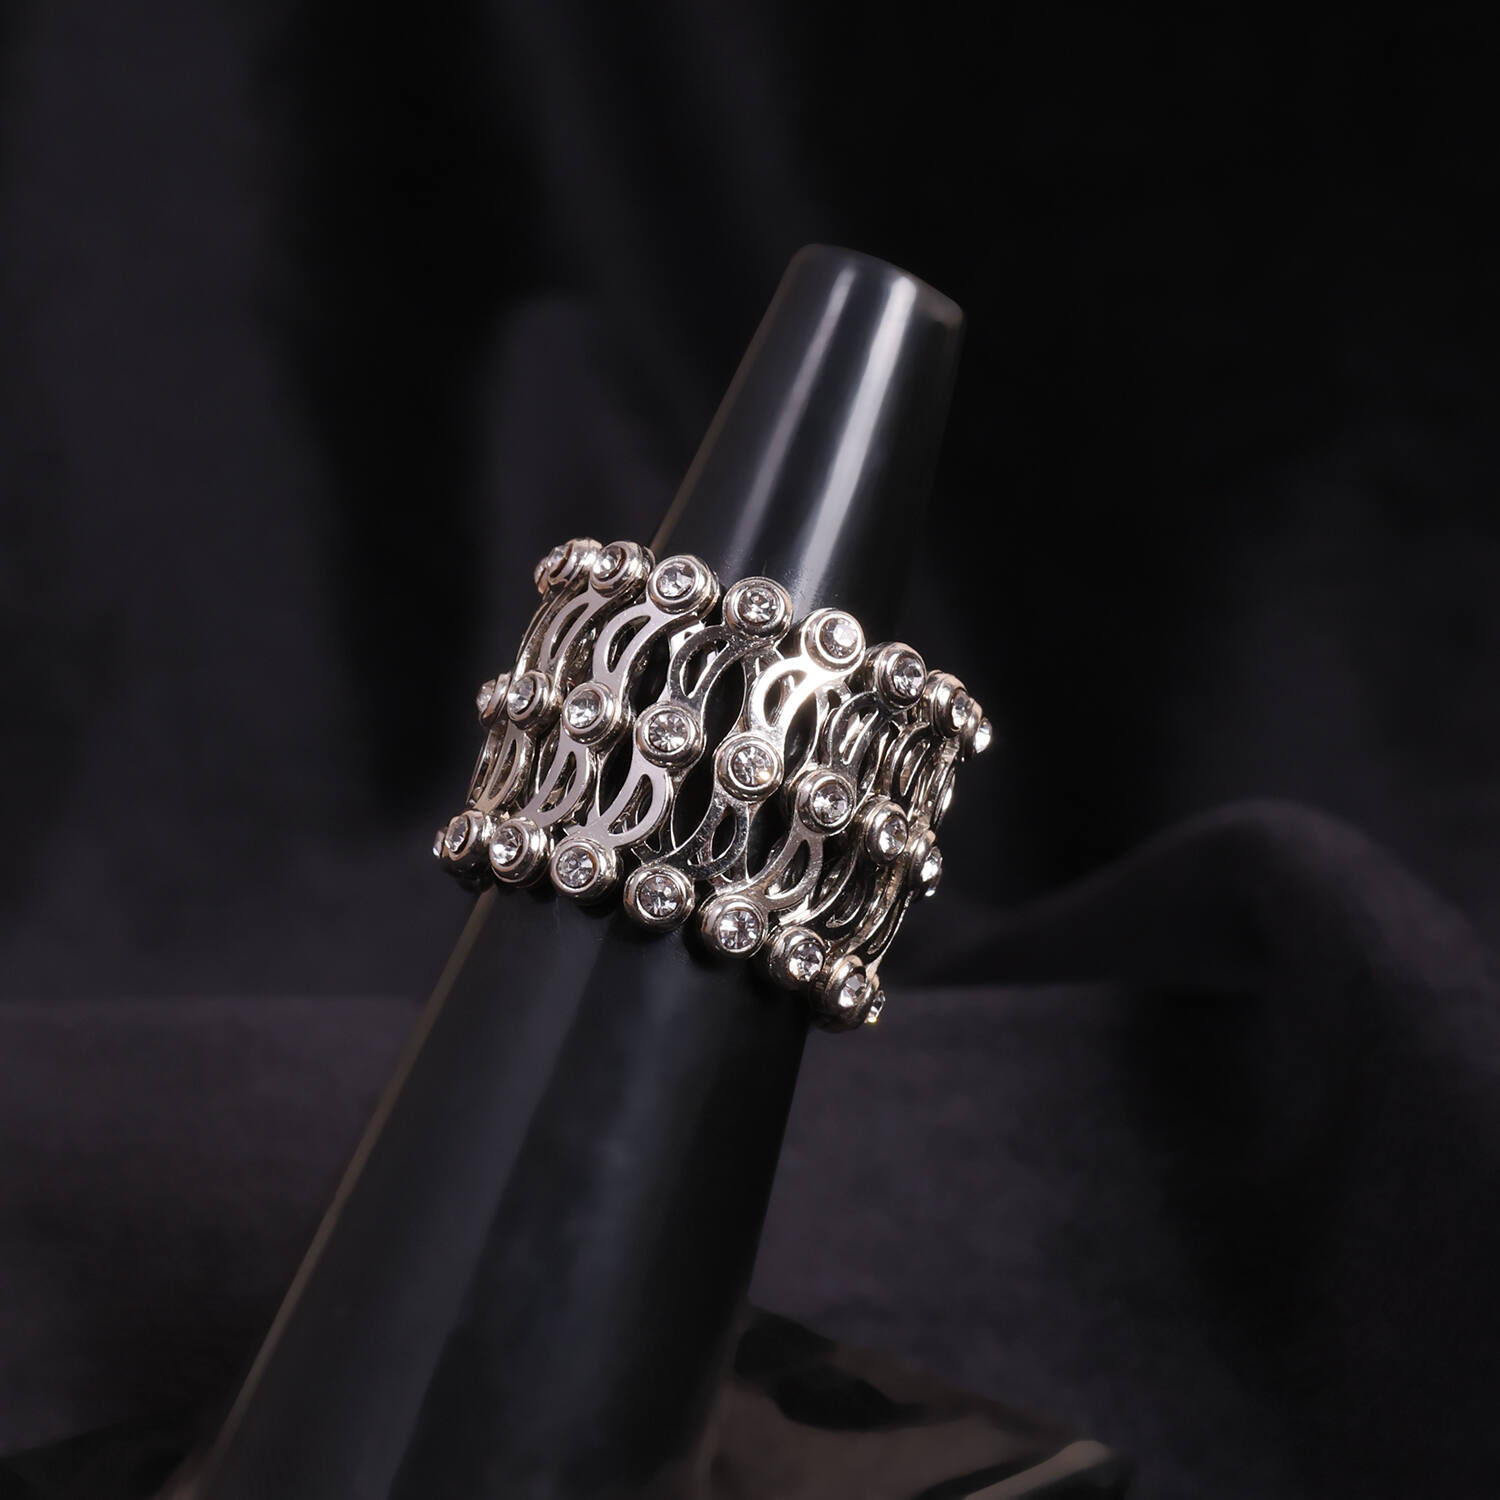 Silver Ring For Men's Design | Both Side D Cut Black Plate Design |